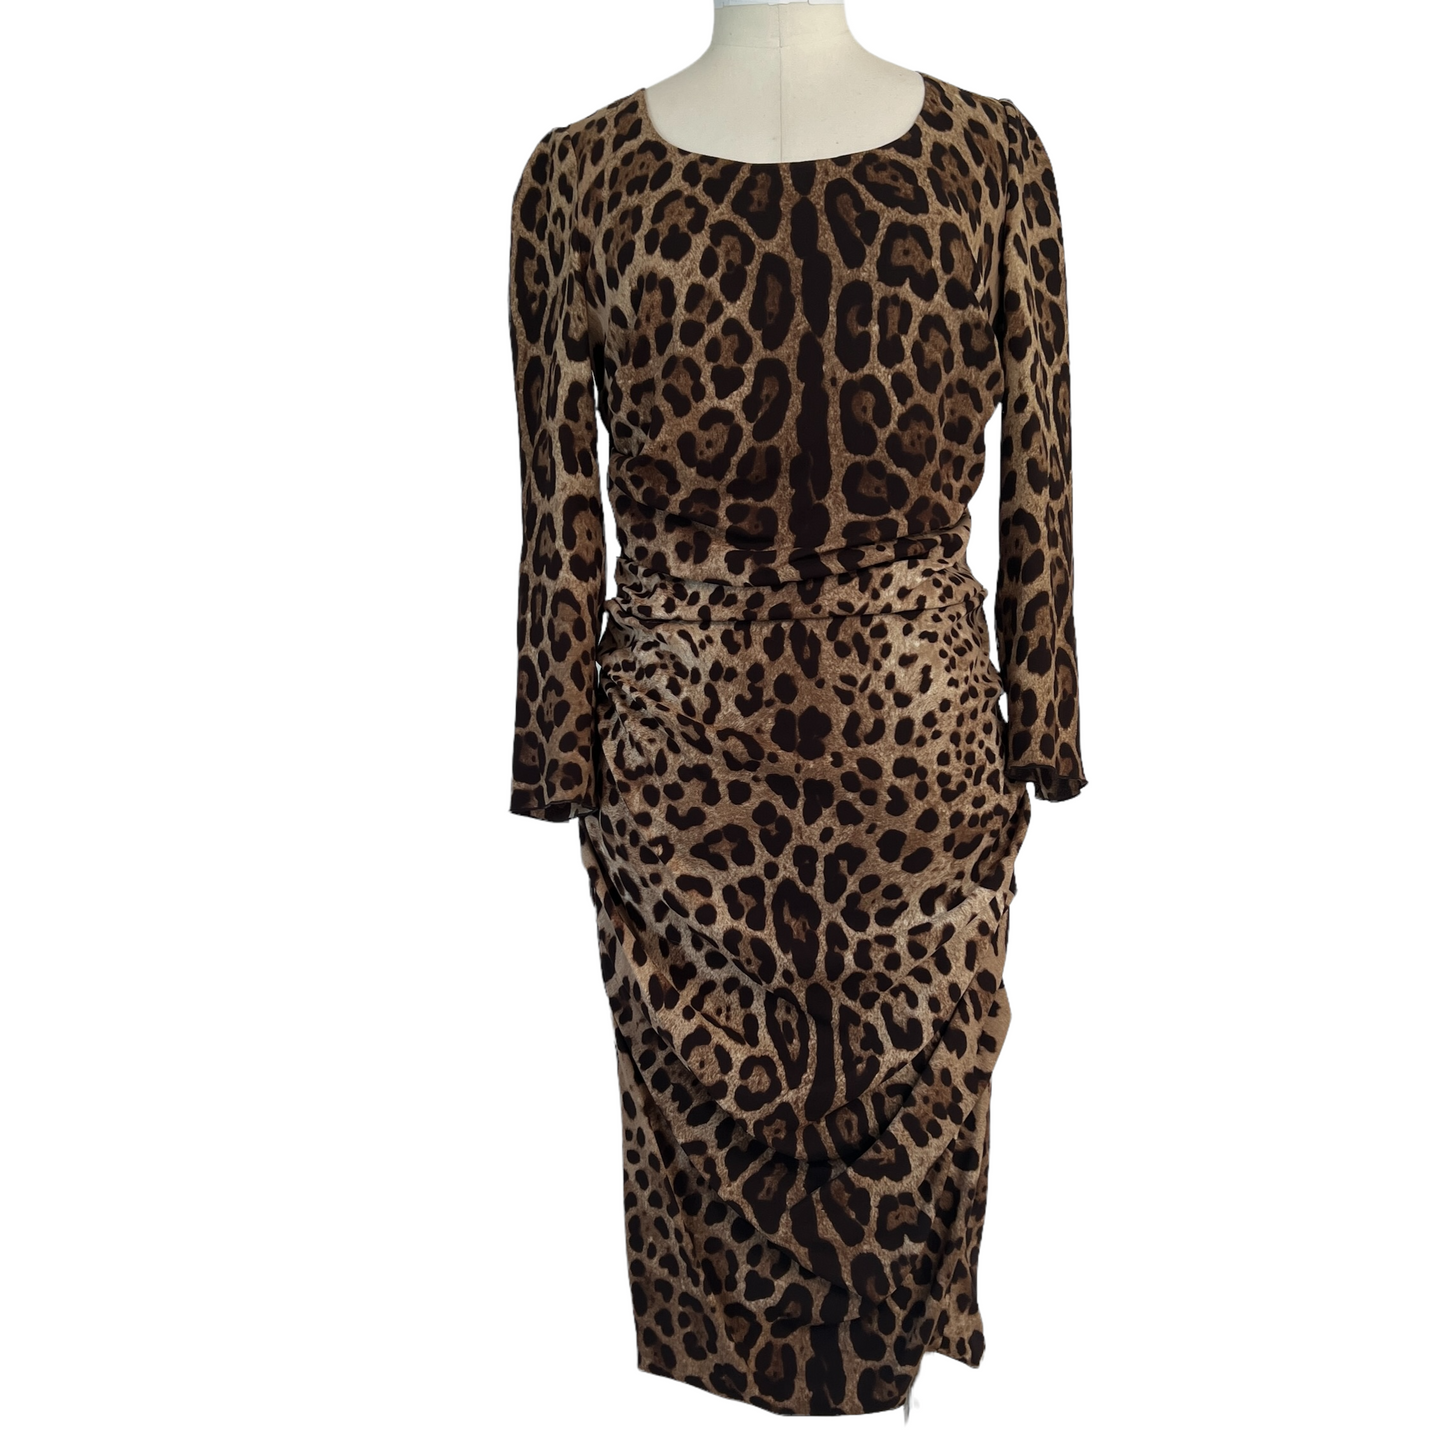 Leopard Dress - L